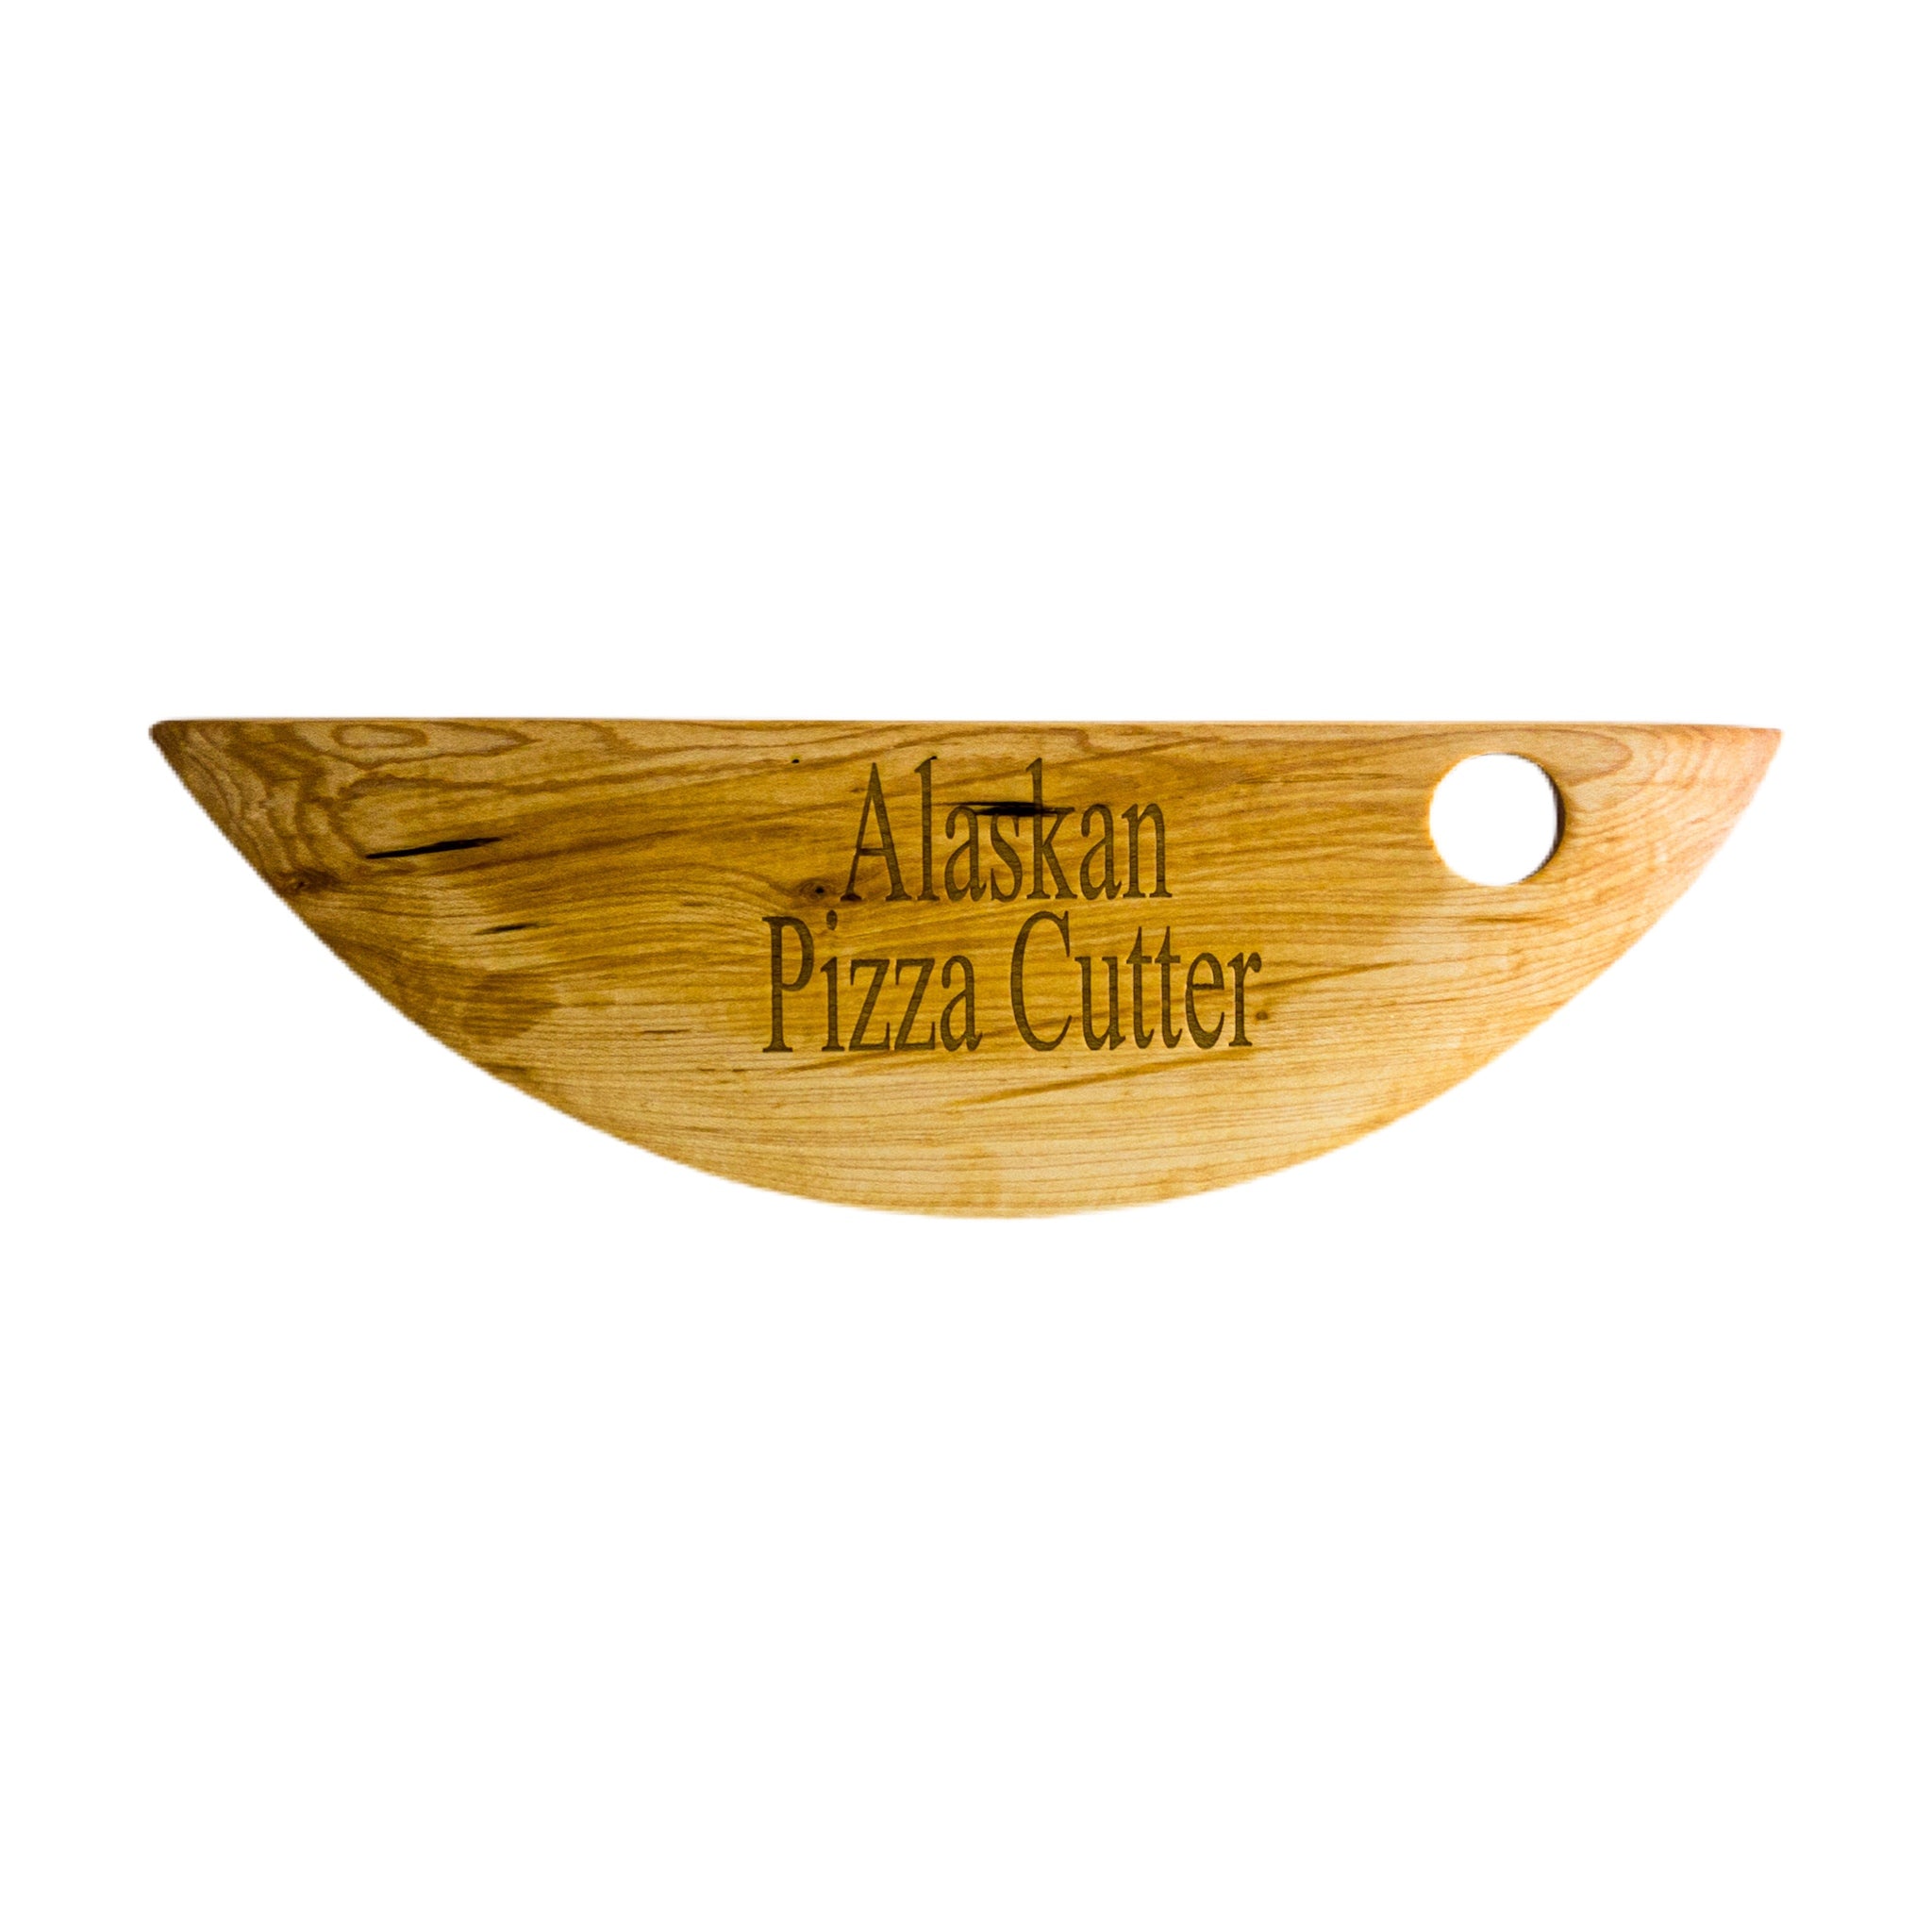 Alaskan Pizza Cutter